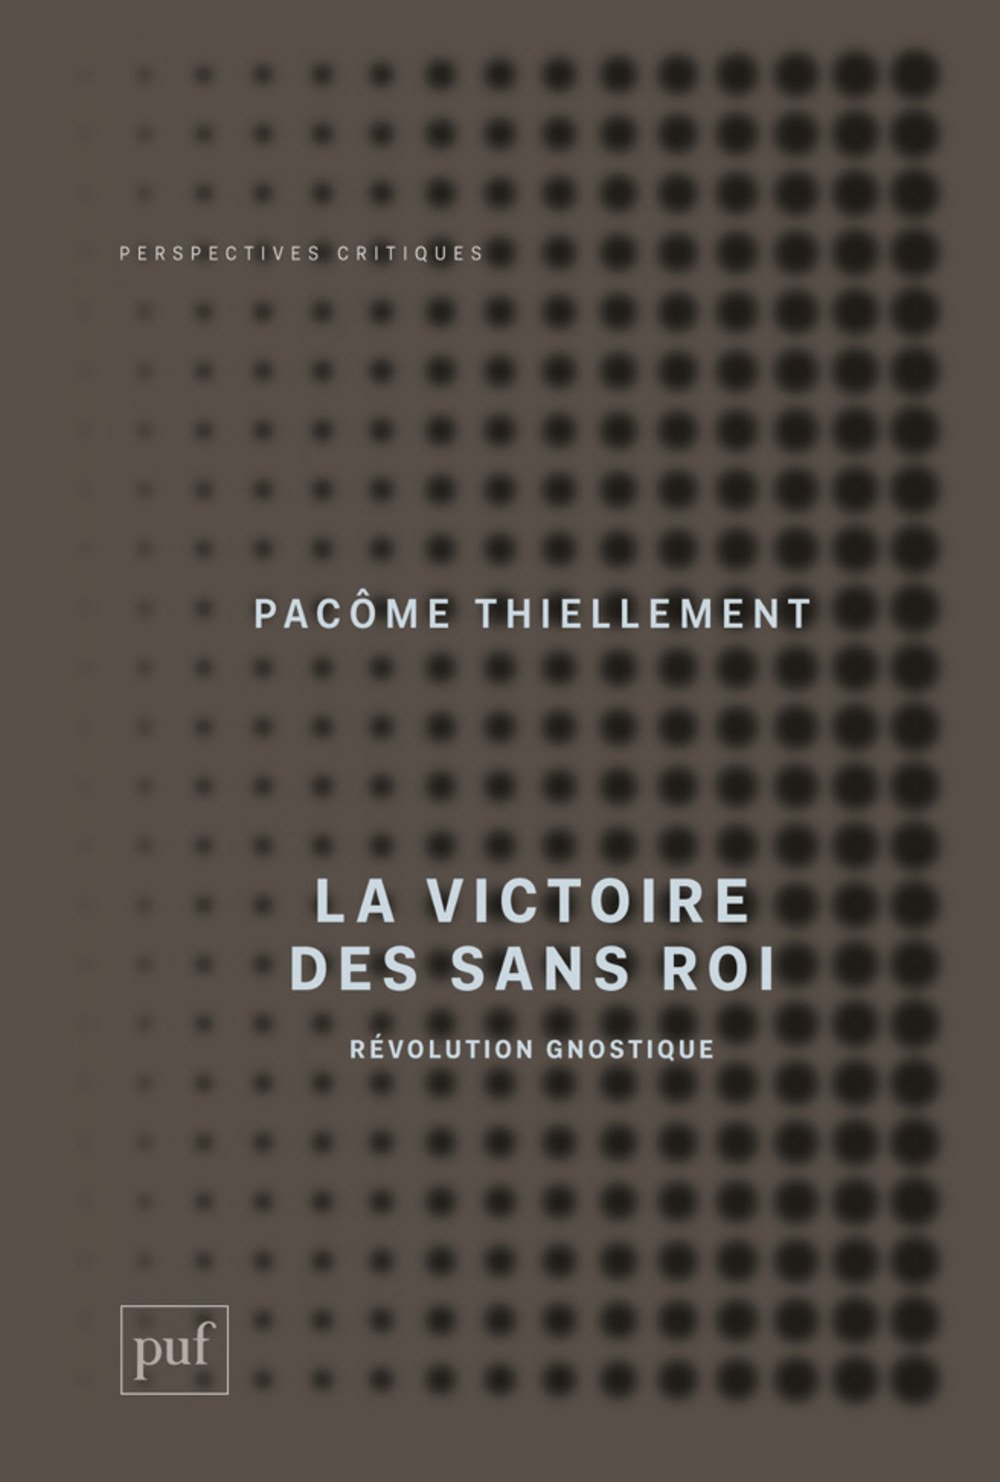 30 août 2017 - Sortie du livre La Victoire des Sans Roi